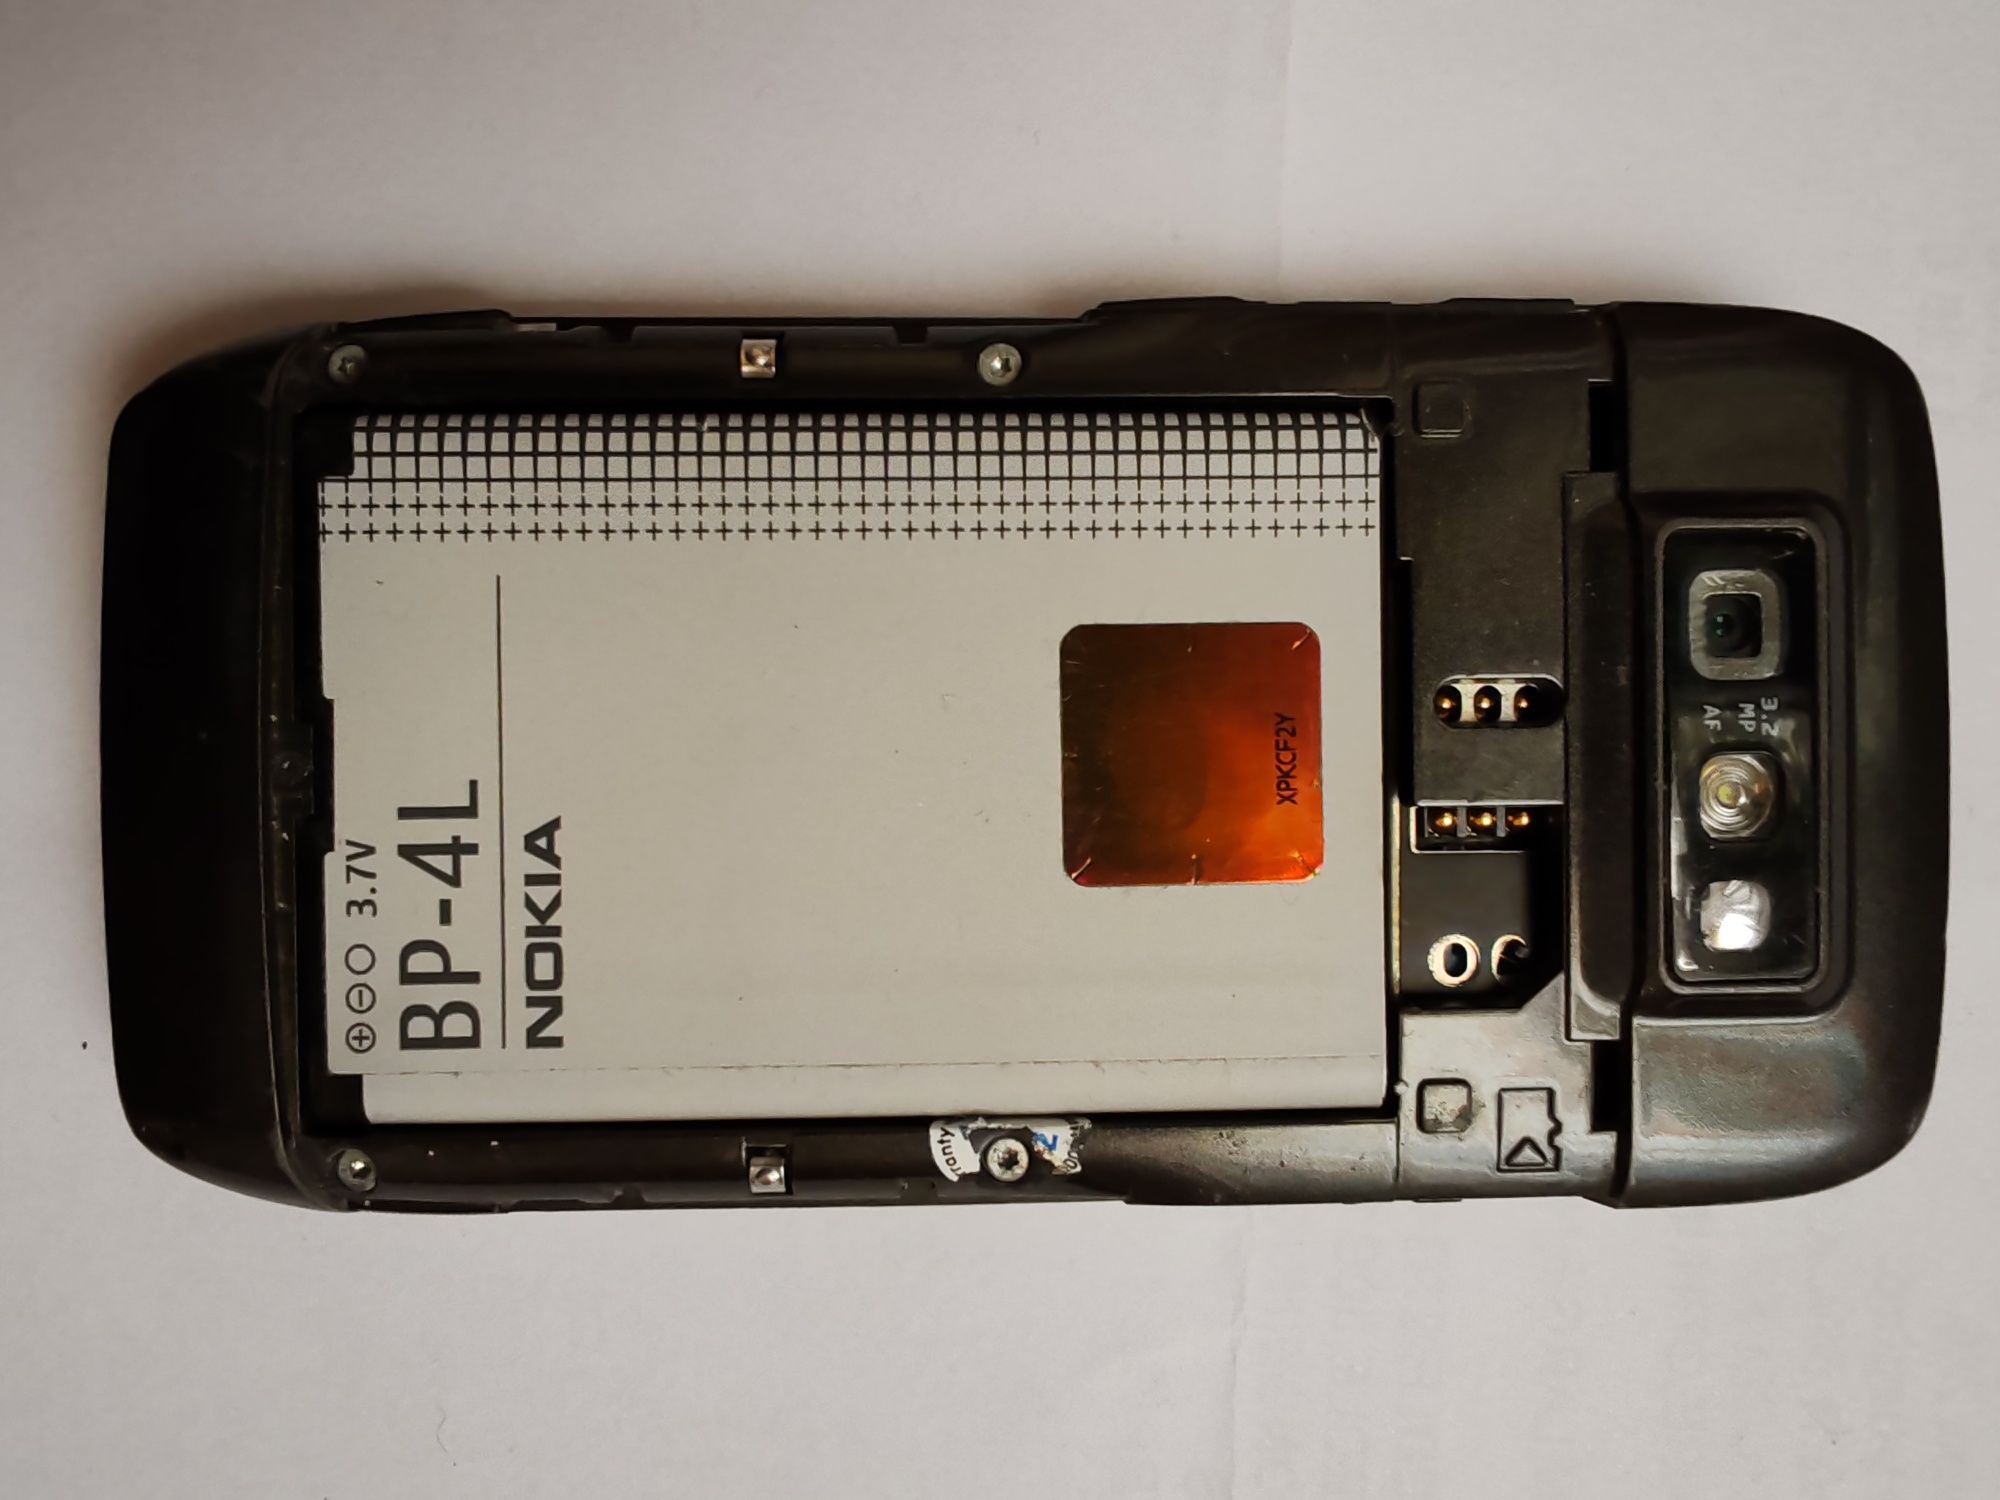 Nokia E71 - completo, para peças